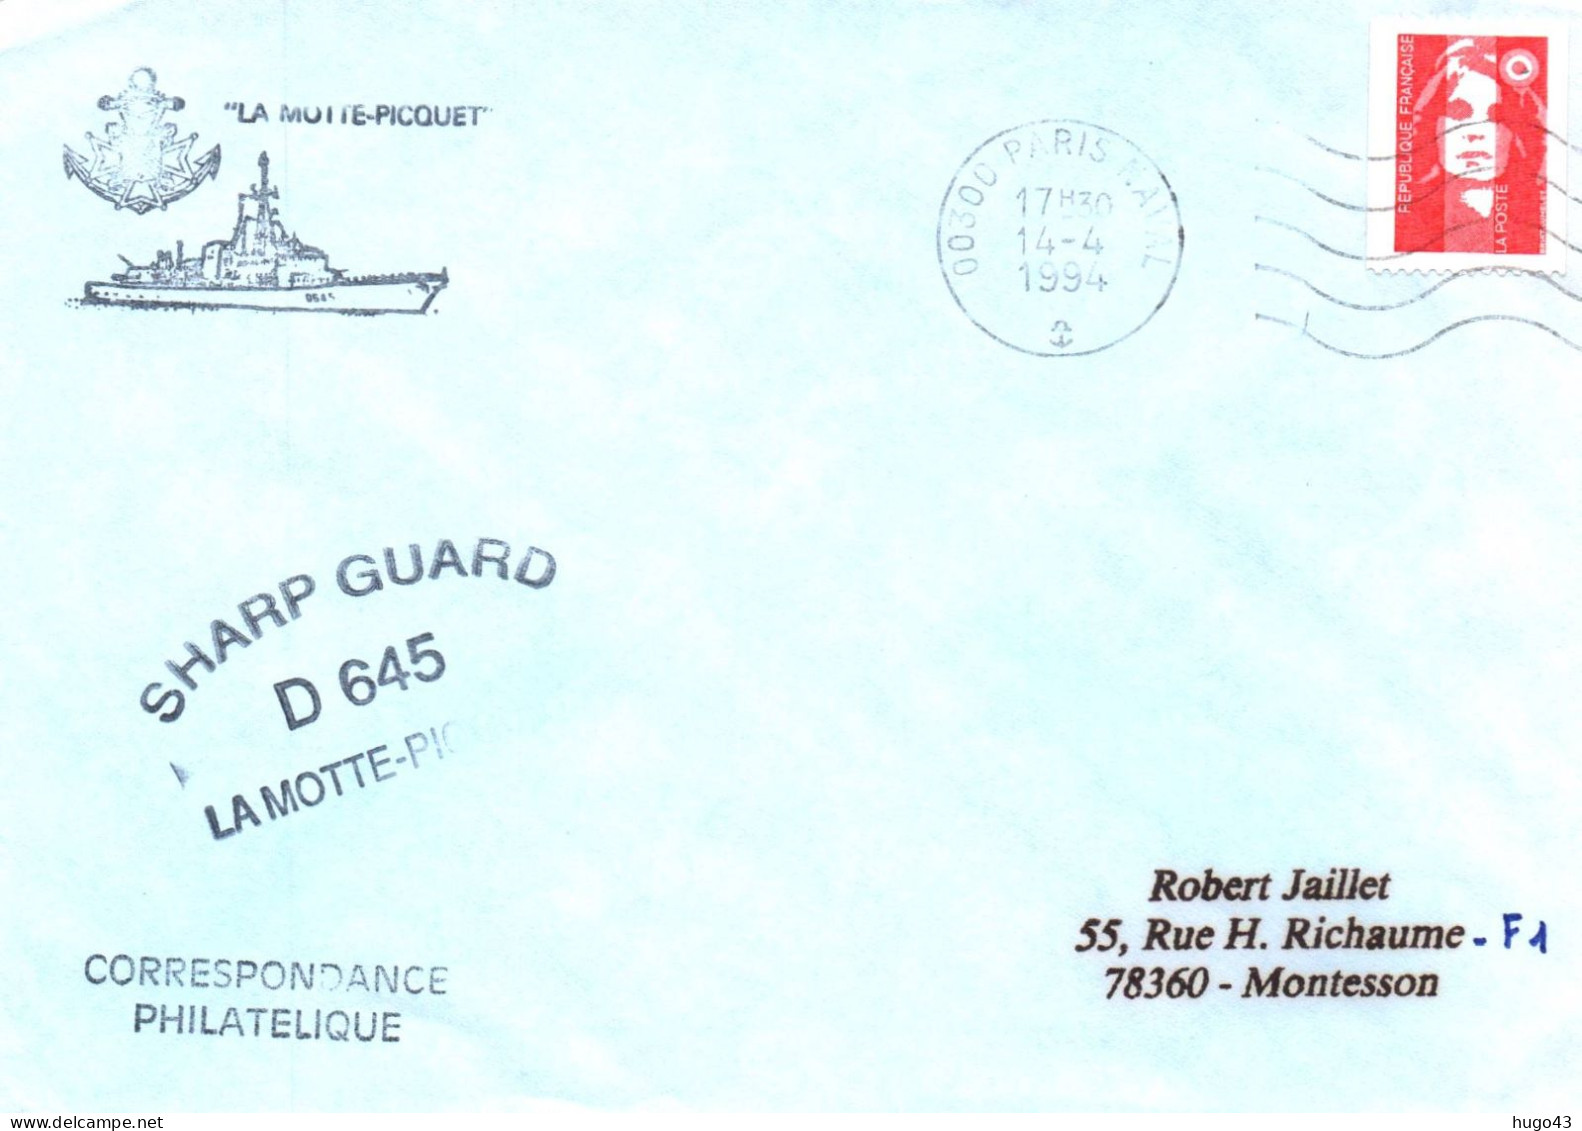 ENVELOPPE AVEC CACHET FREGATE FASM LA MOTTE PICQUET - SHARP GUARD D 645 - PARIS NAVAL LE 14/04/1994 - Seepost